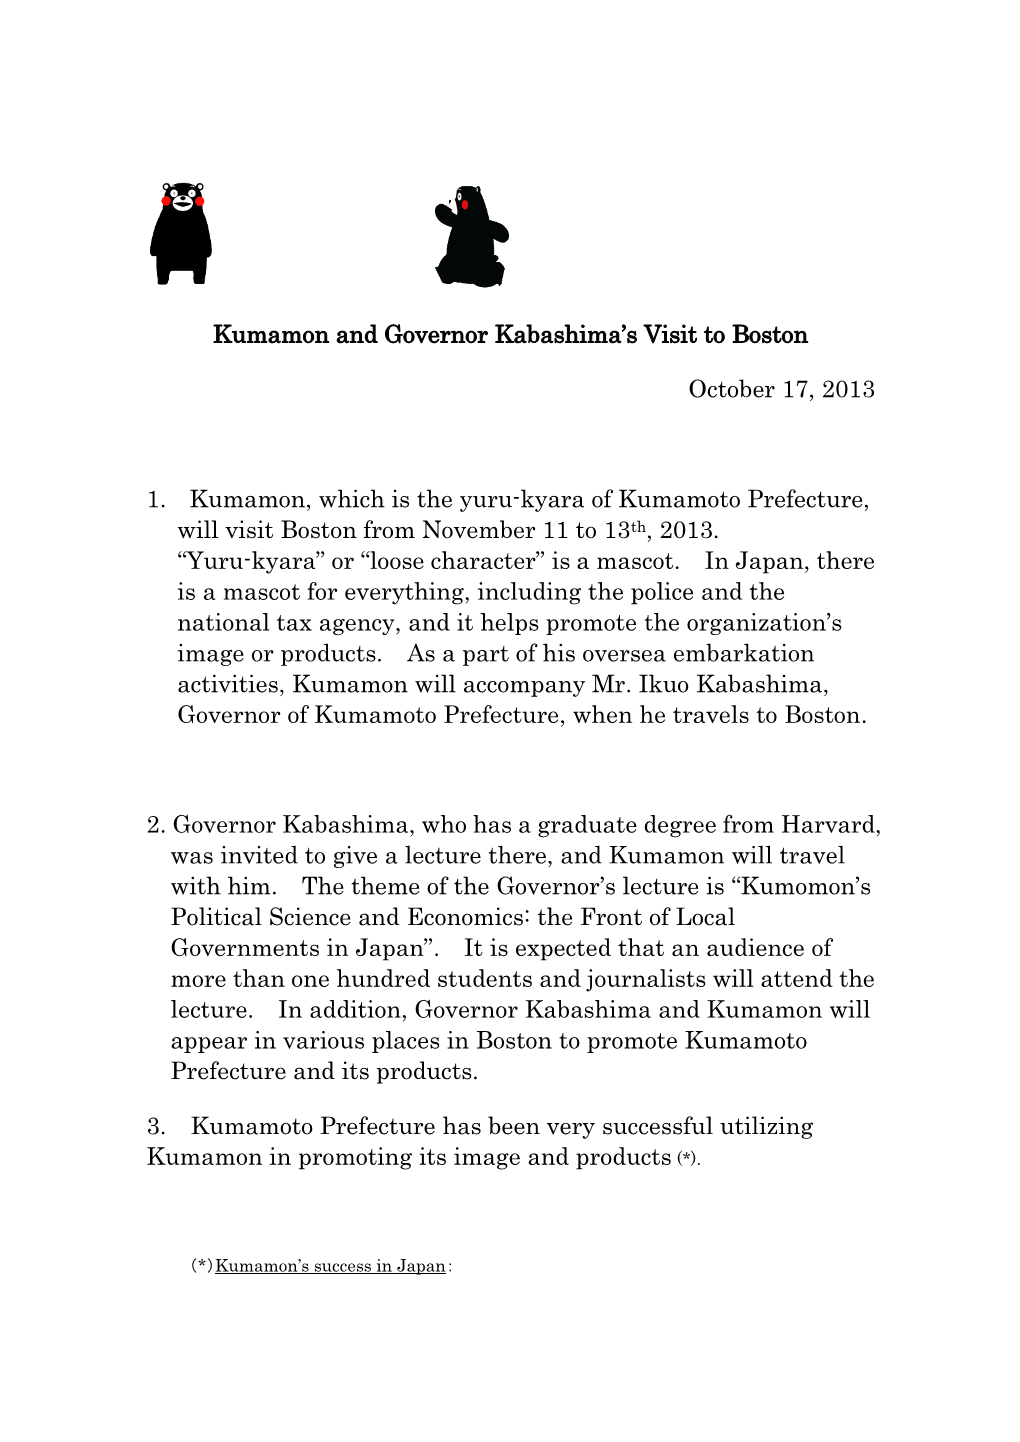 Press Release on Kumamon's Visit